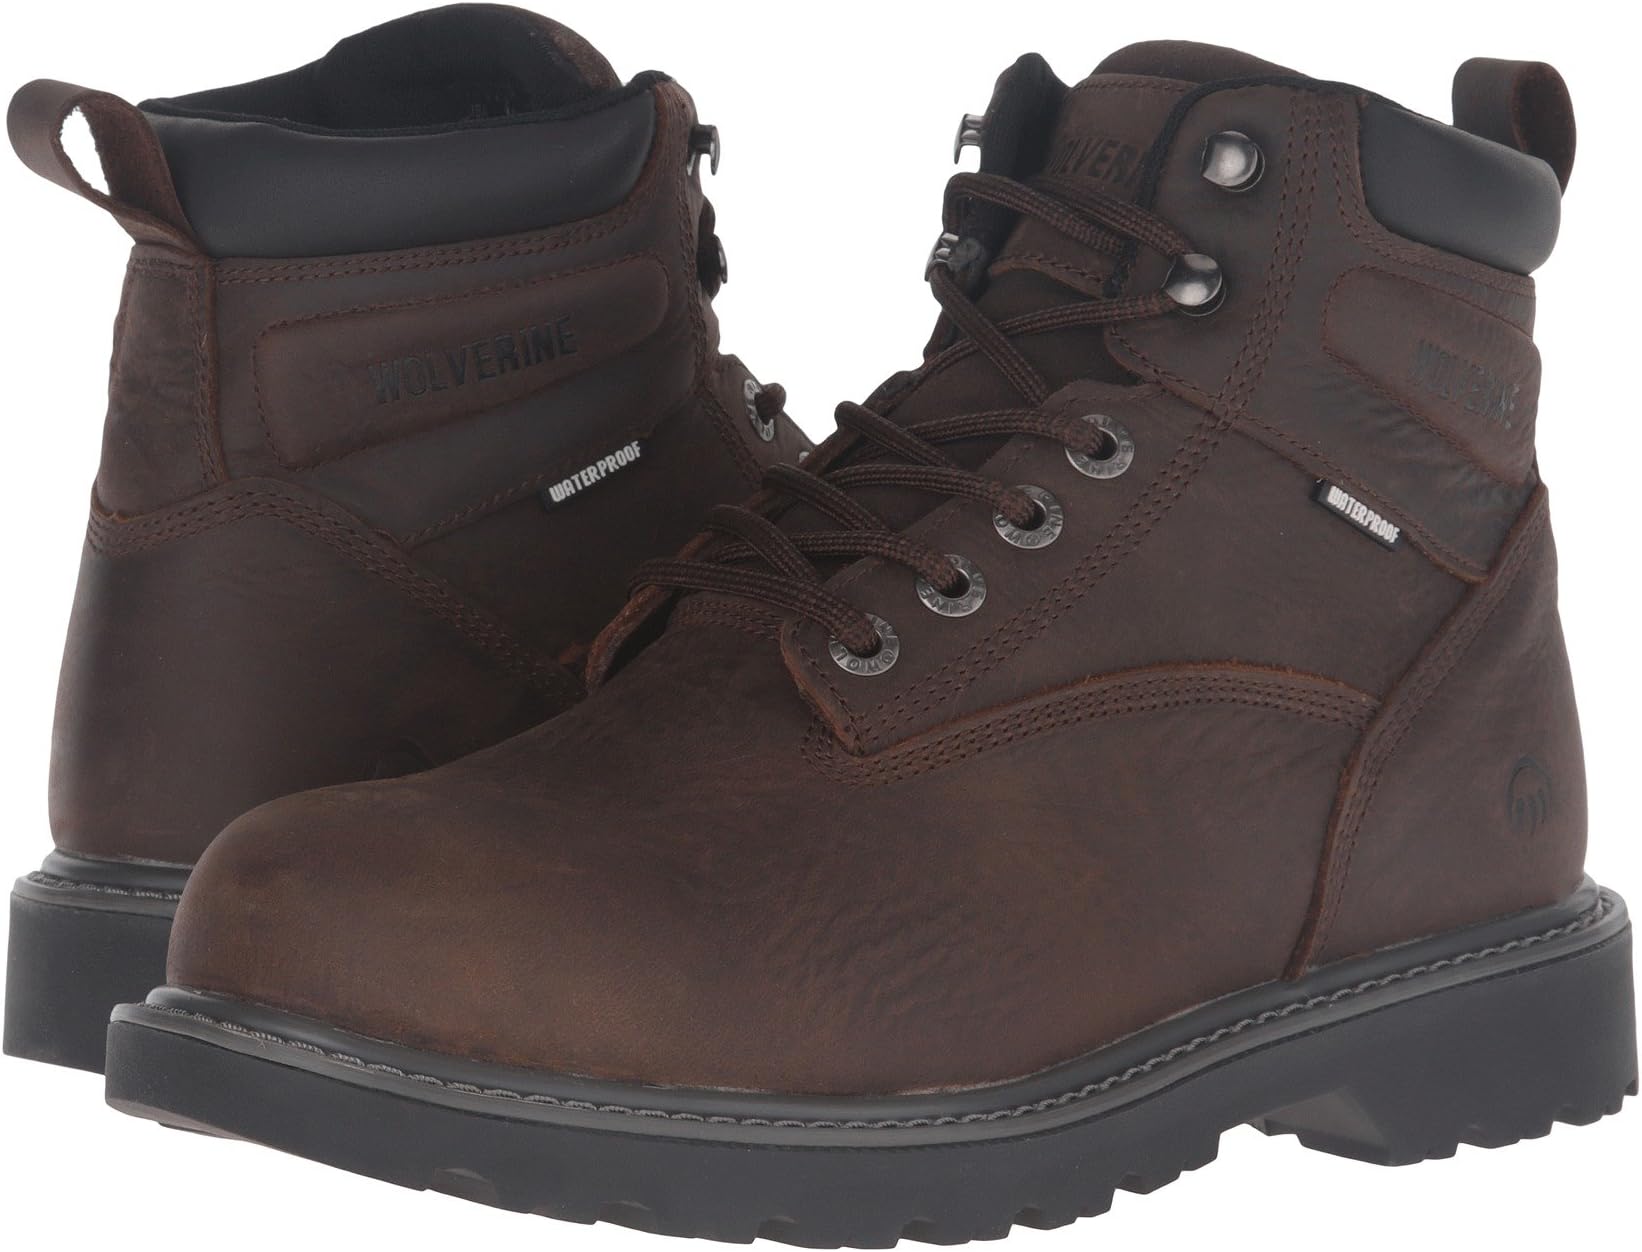 Рабочая обувь со стальным носком Floorhand Steel Toe Wolverine, цвет Dark Brown